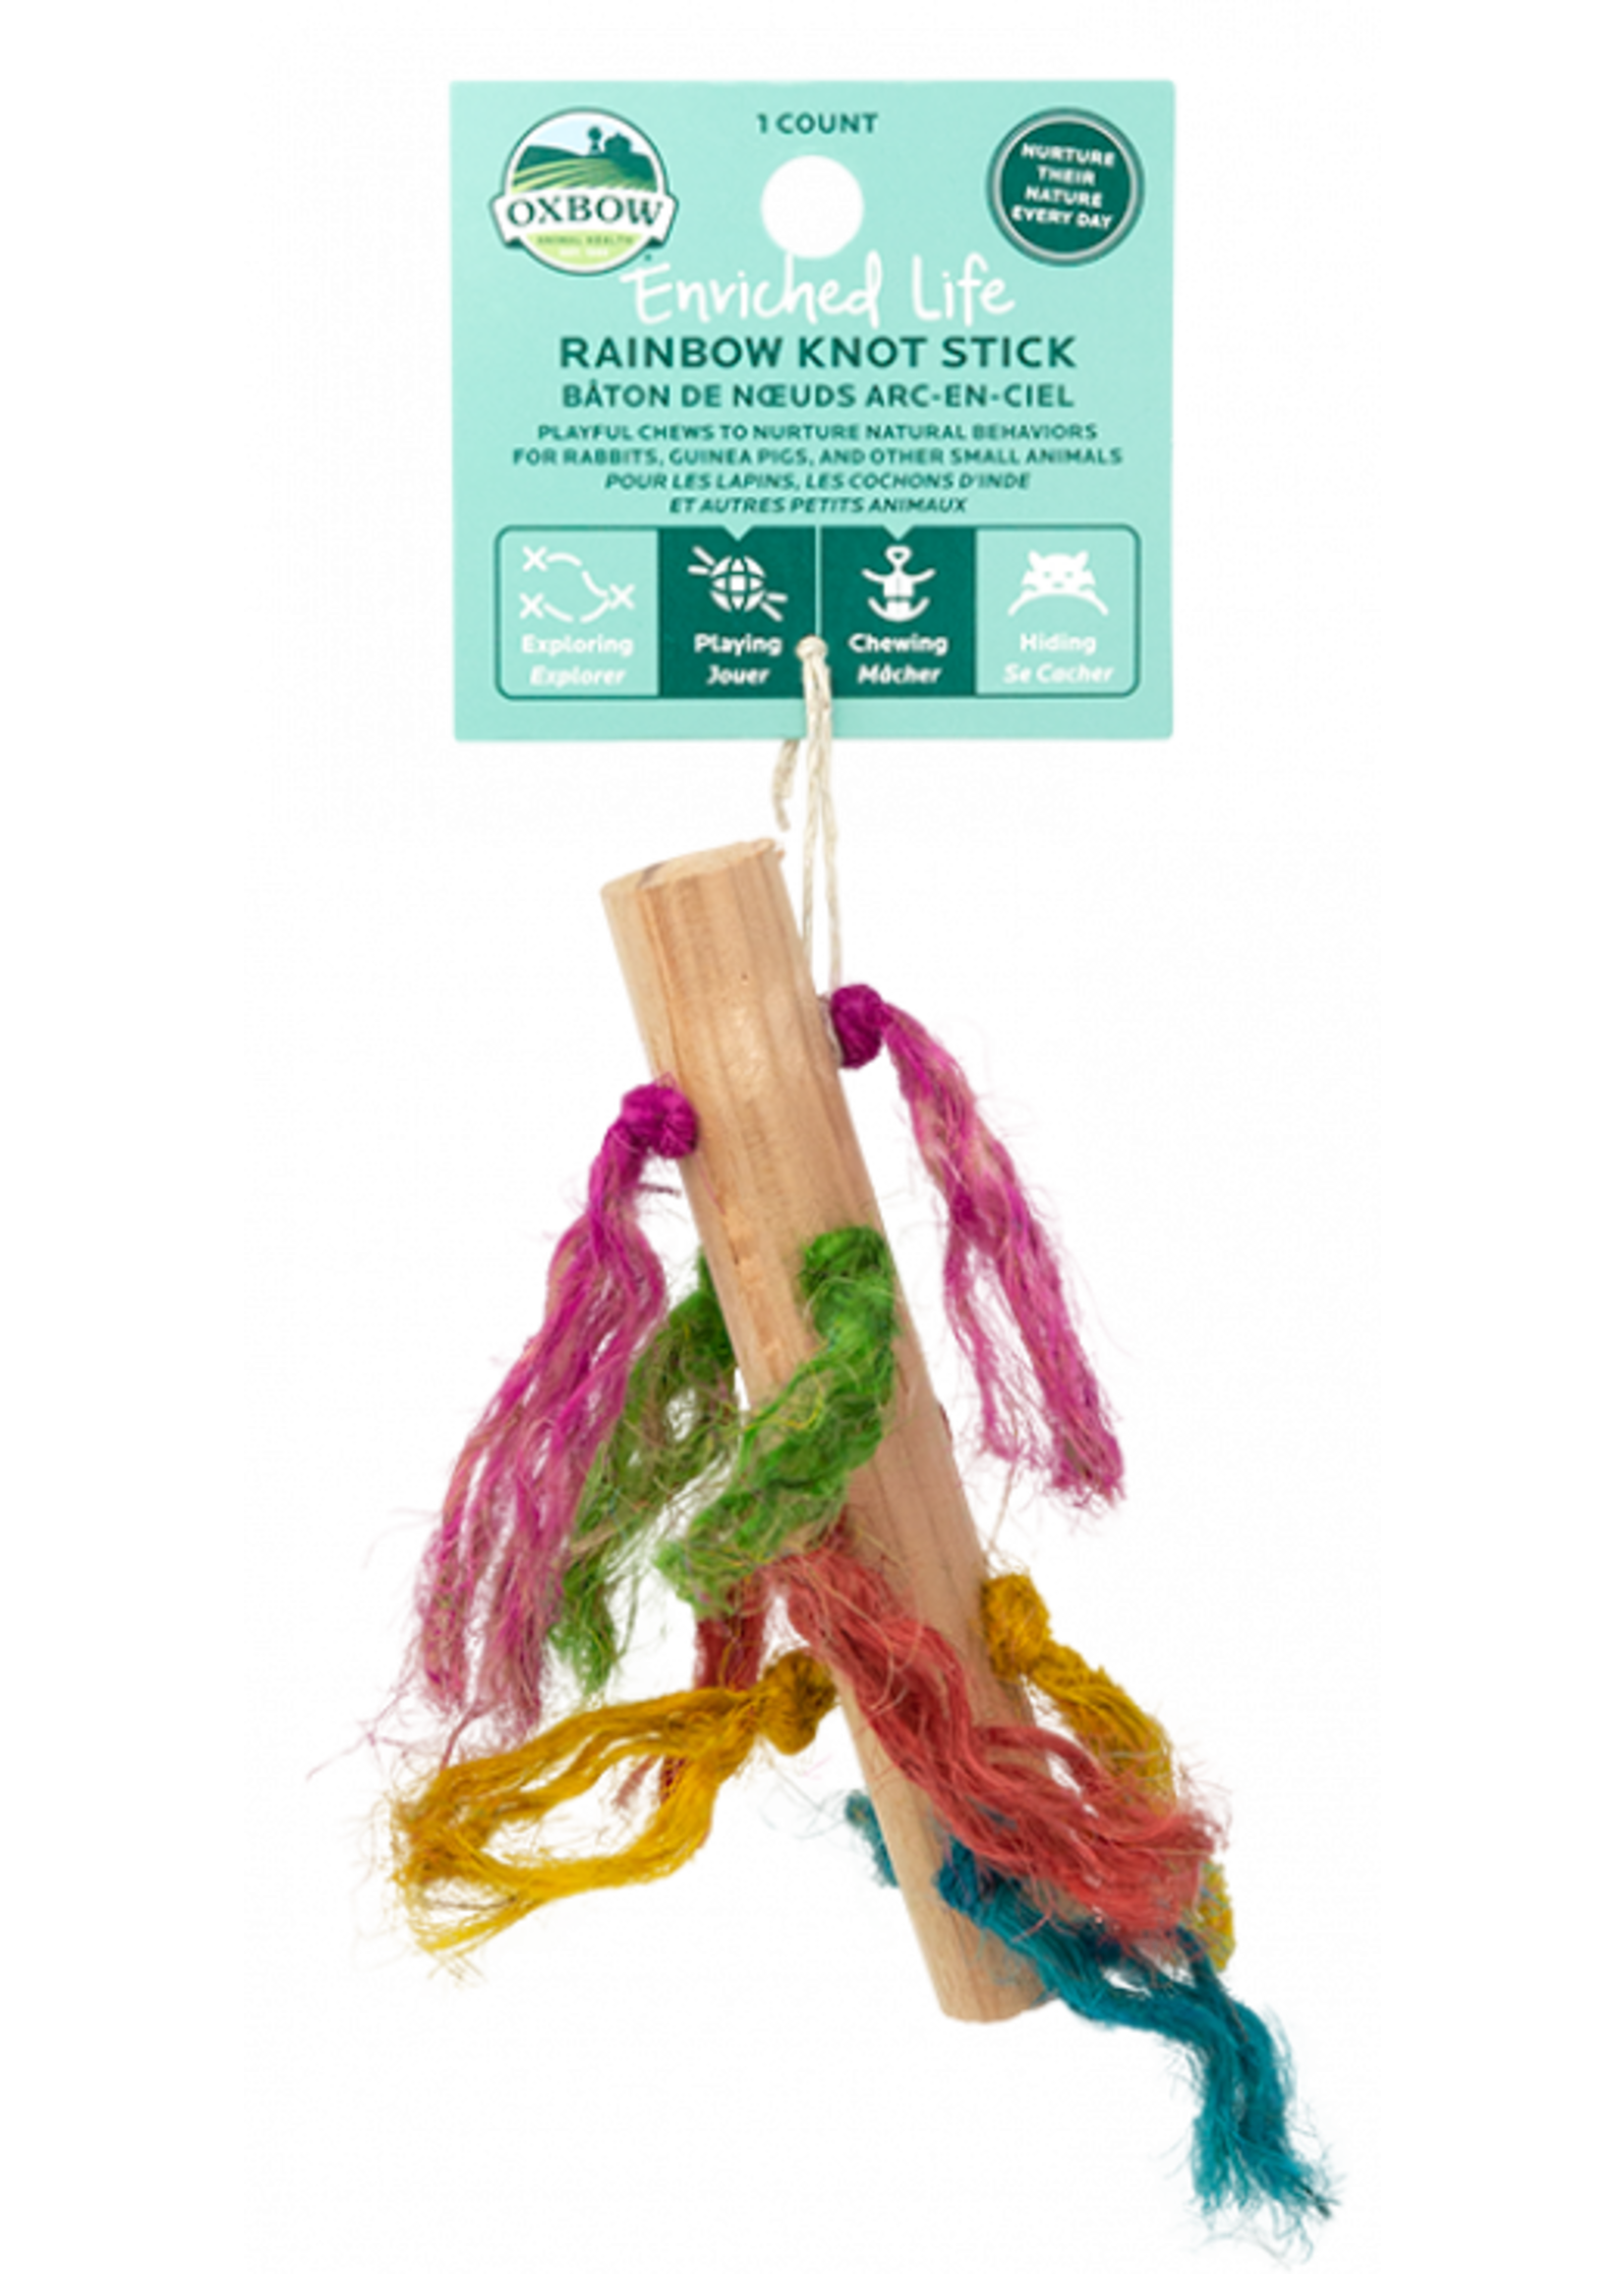 Oxbow Oxbow Rainbow Knot Stick